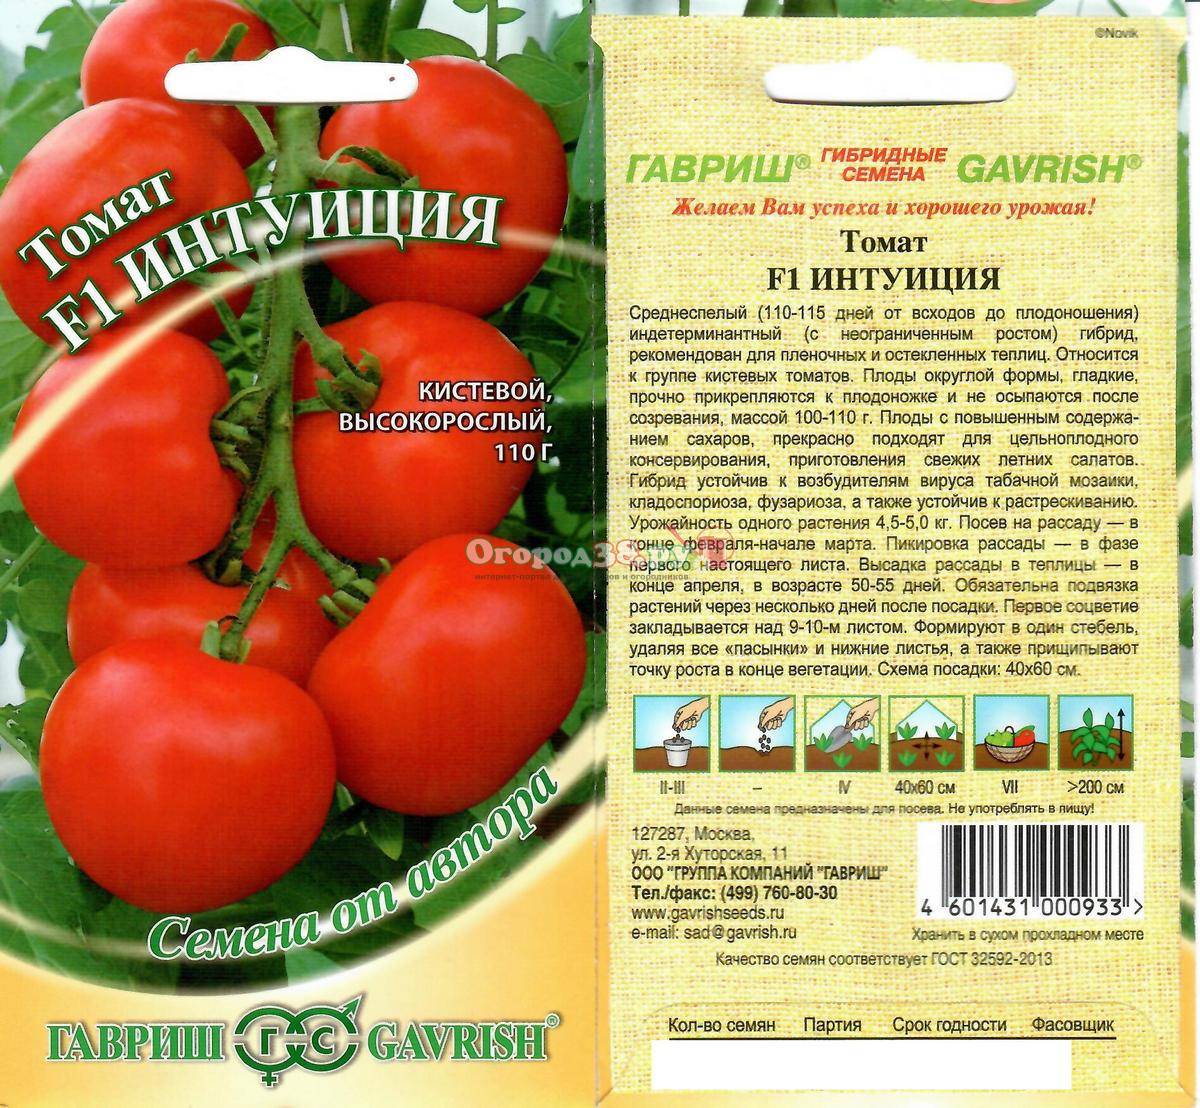 Лучшие сорта кистевых томатов для теплиц и открытого грунта. описание лучших сортов кистевых томатов и правила выращивания